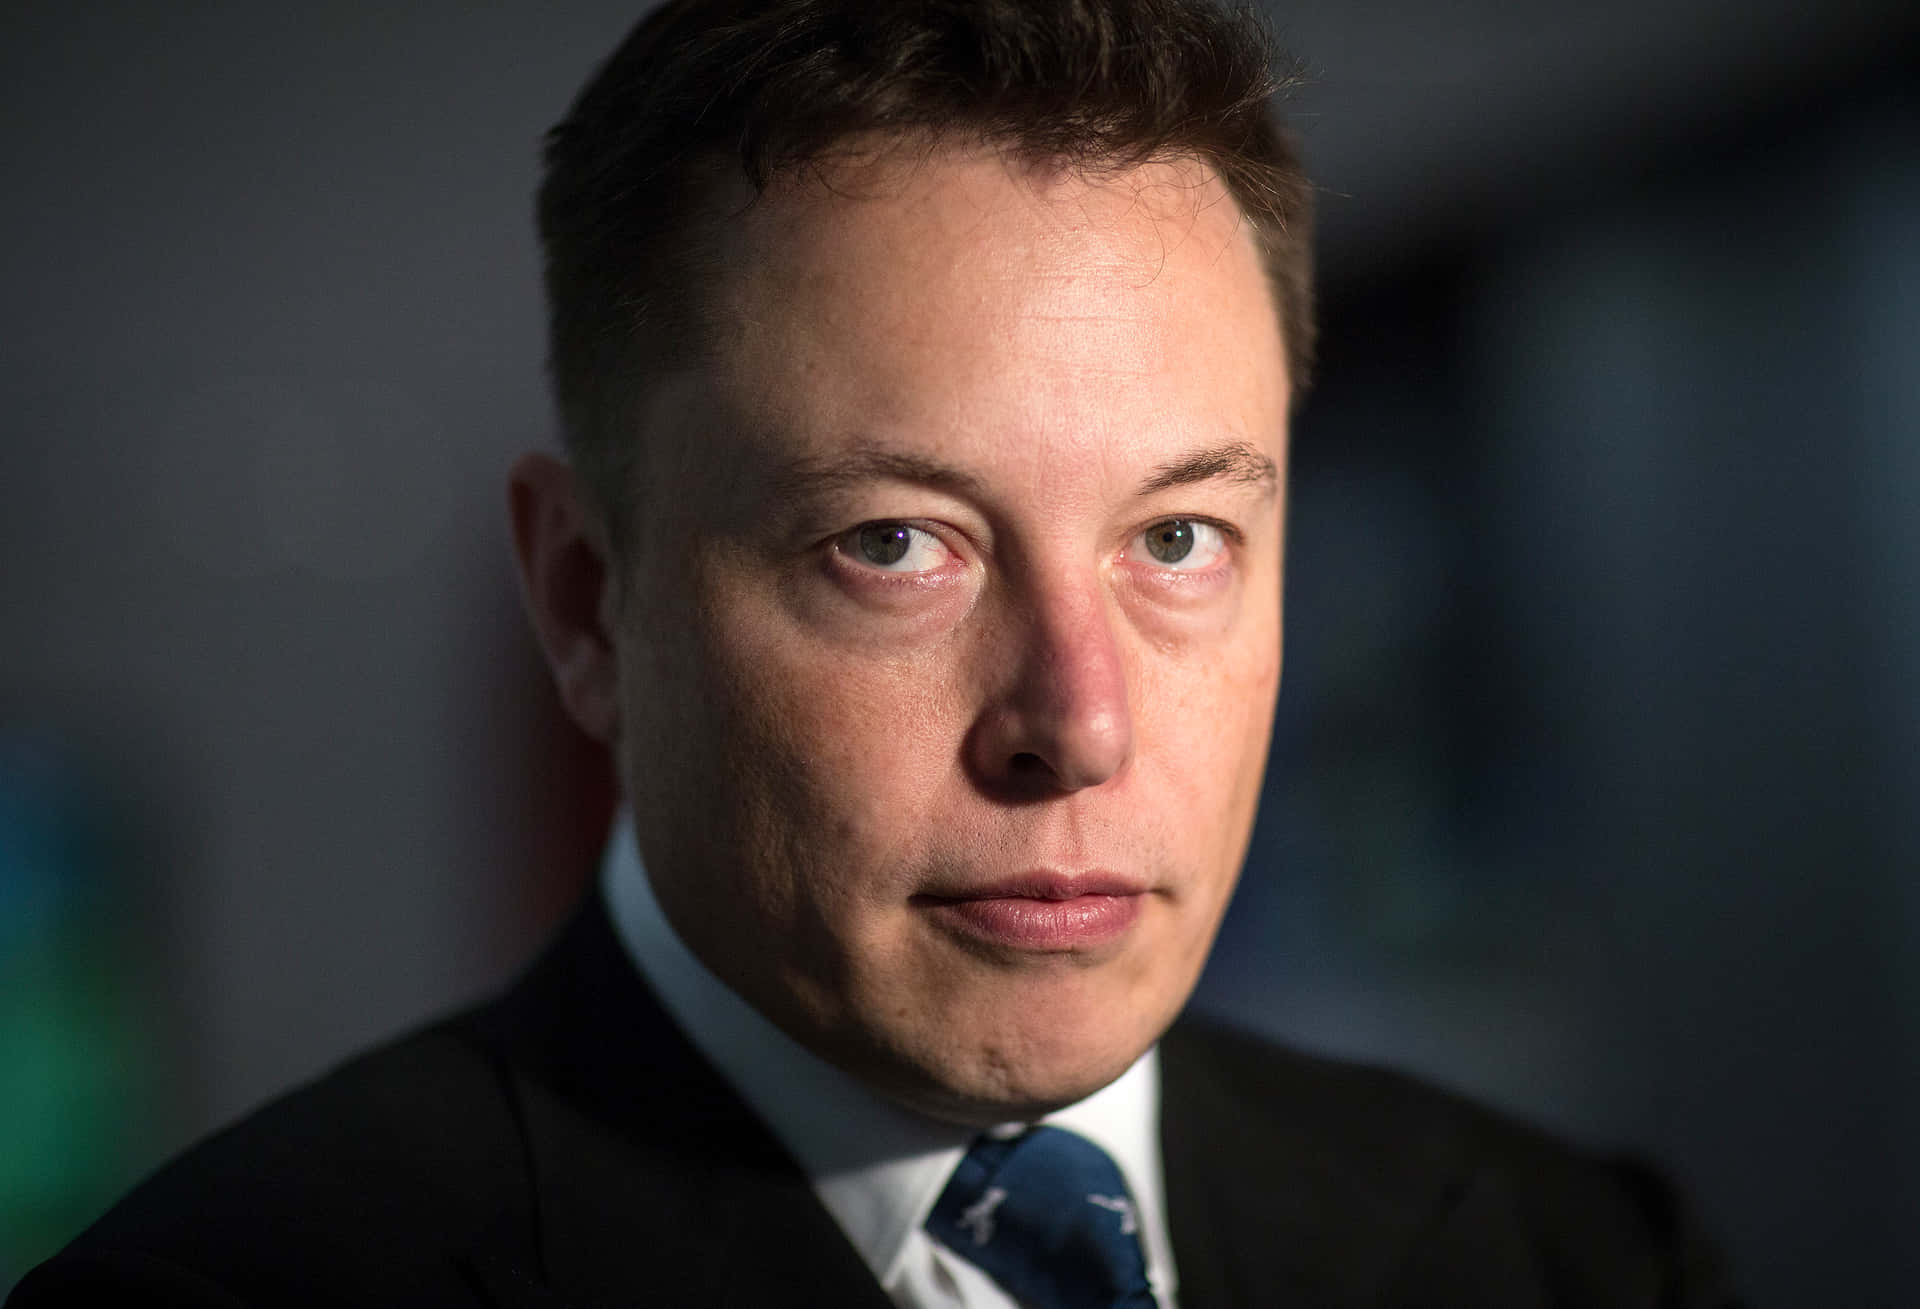 Elon Musk, the Innovator and Entrepreneur